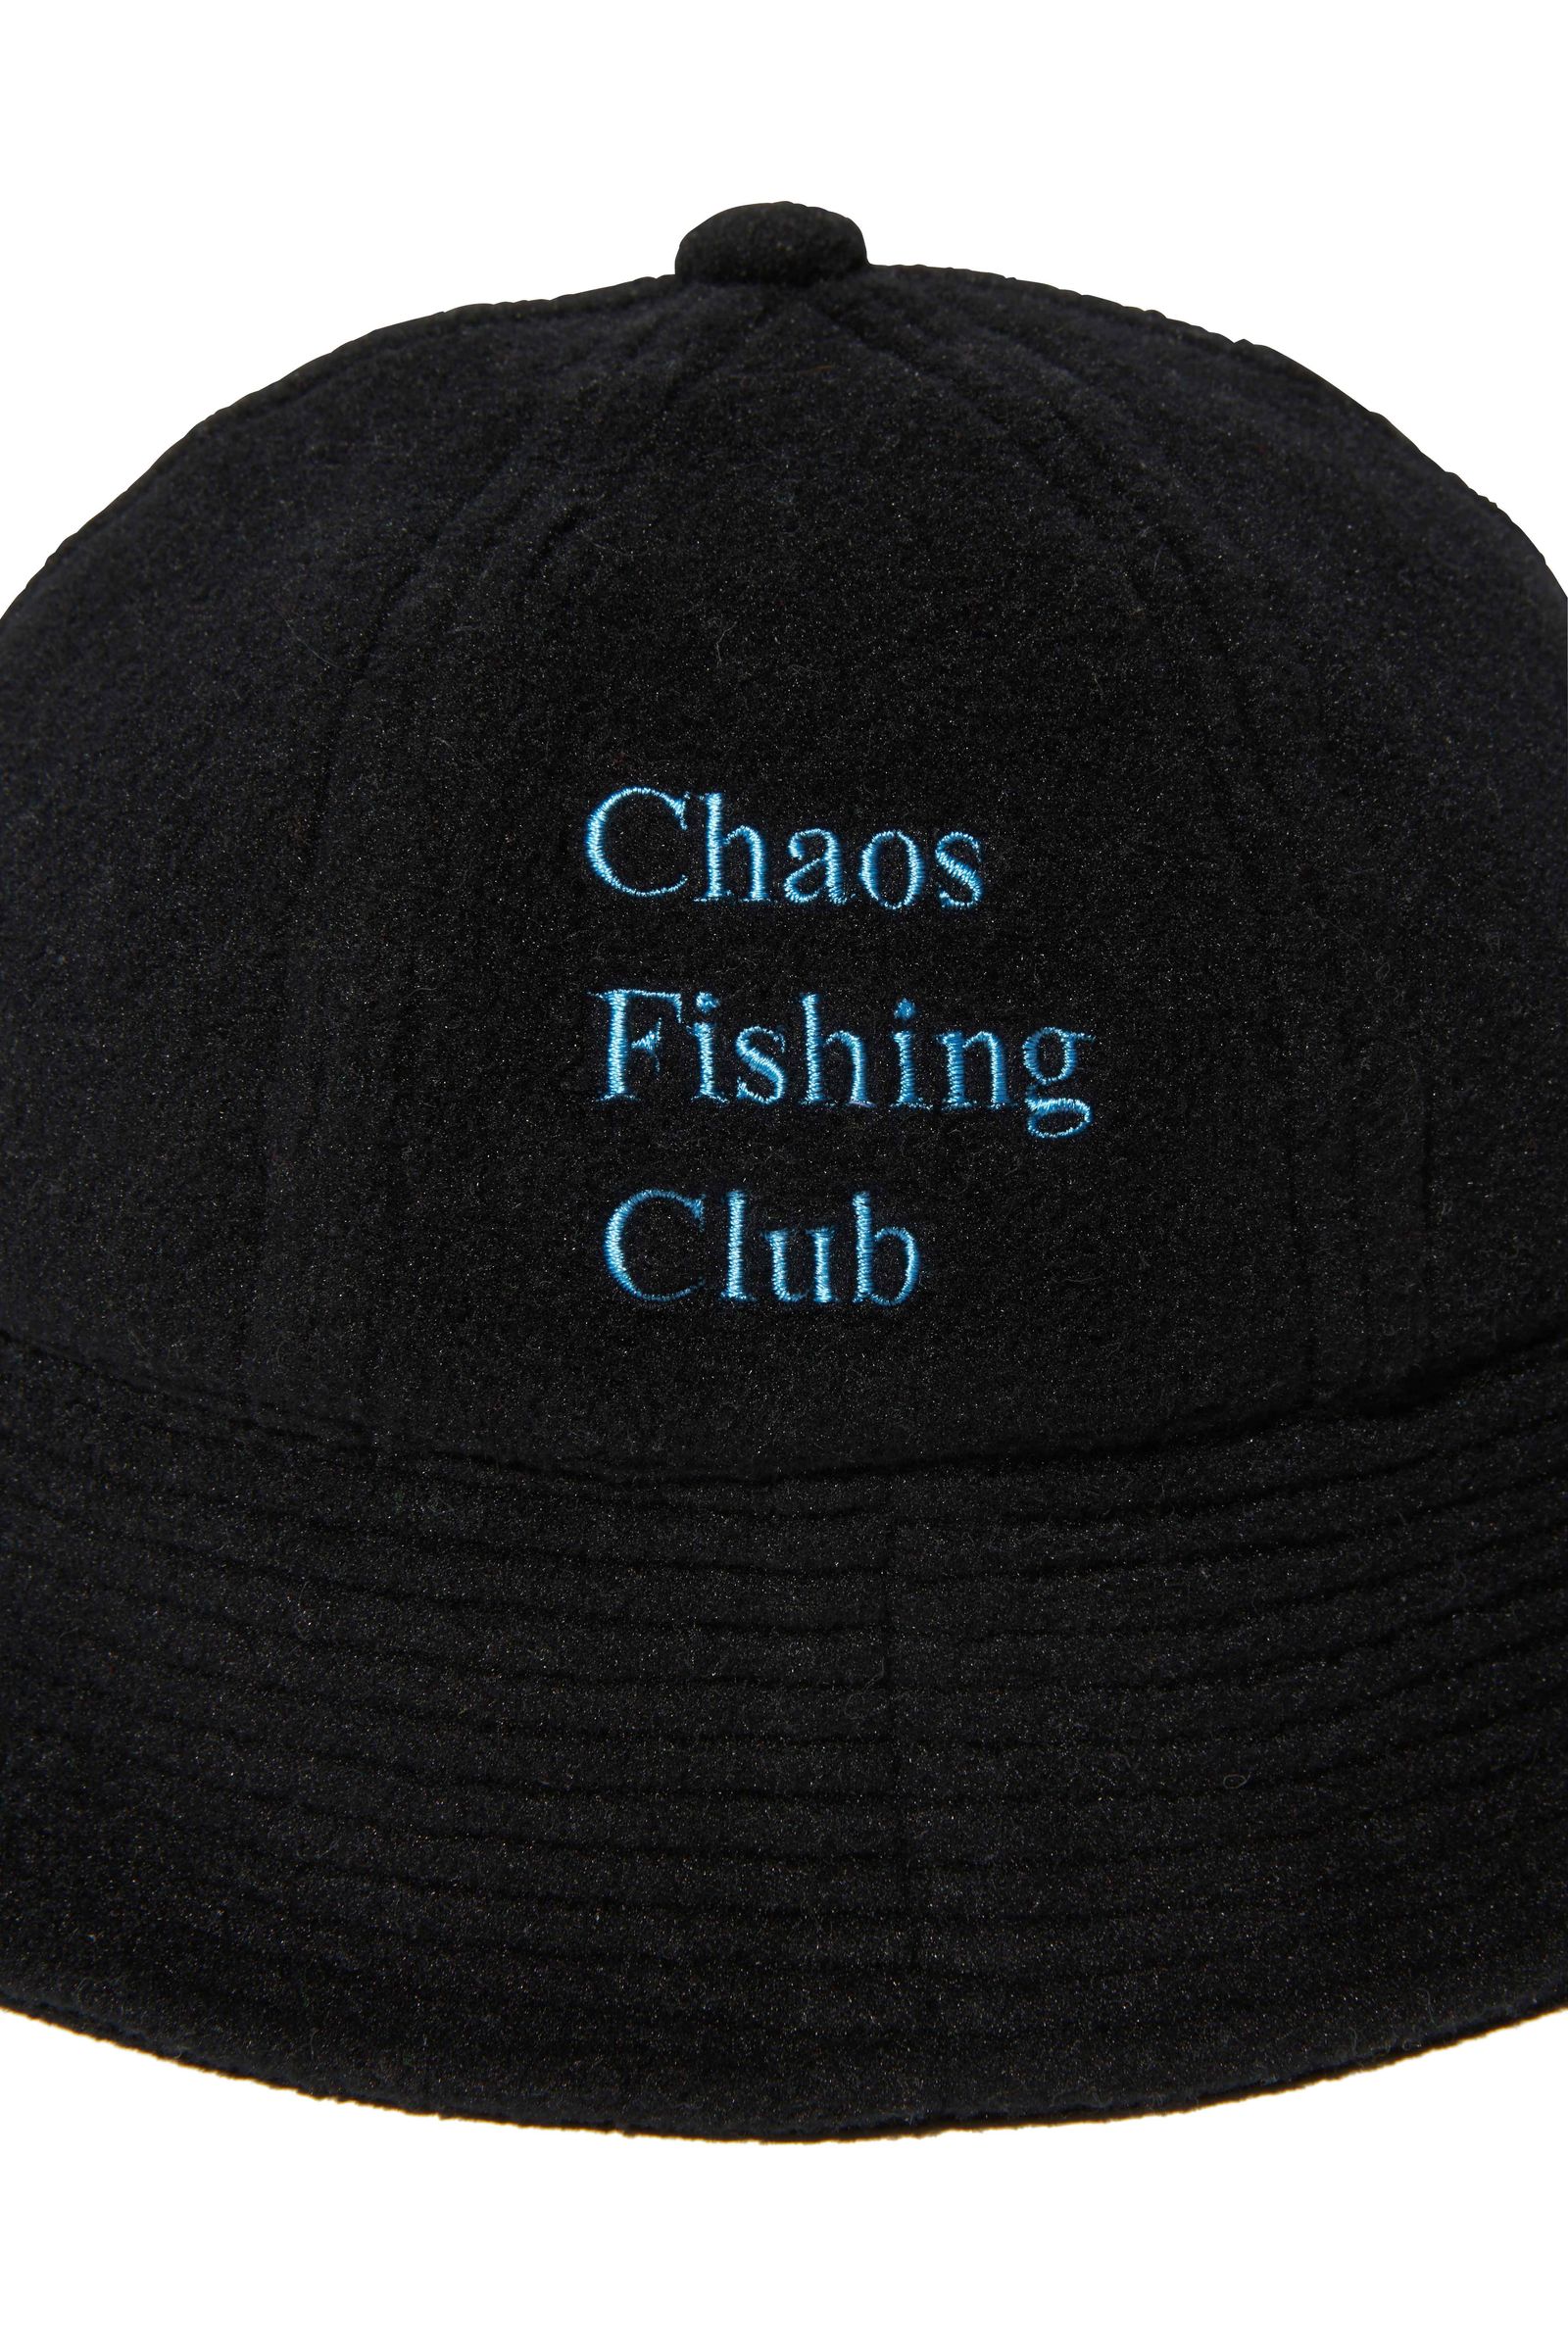 Chaos Fishing Club LOGO BEANIE オレンジ 渋谷パルコ ポップアップ 